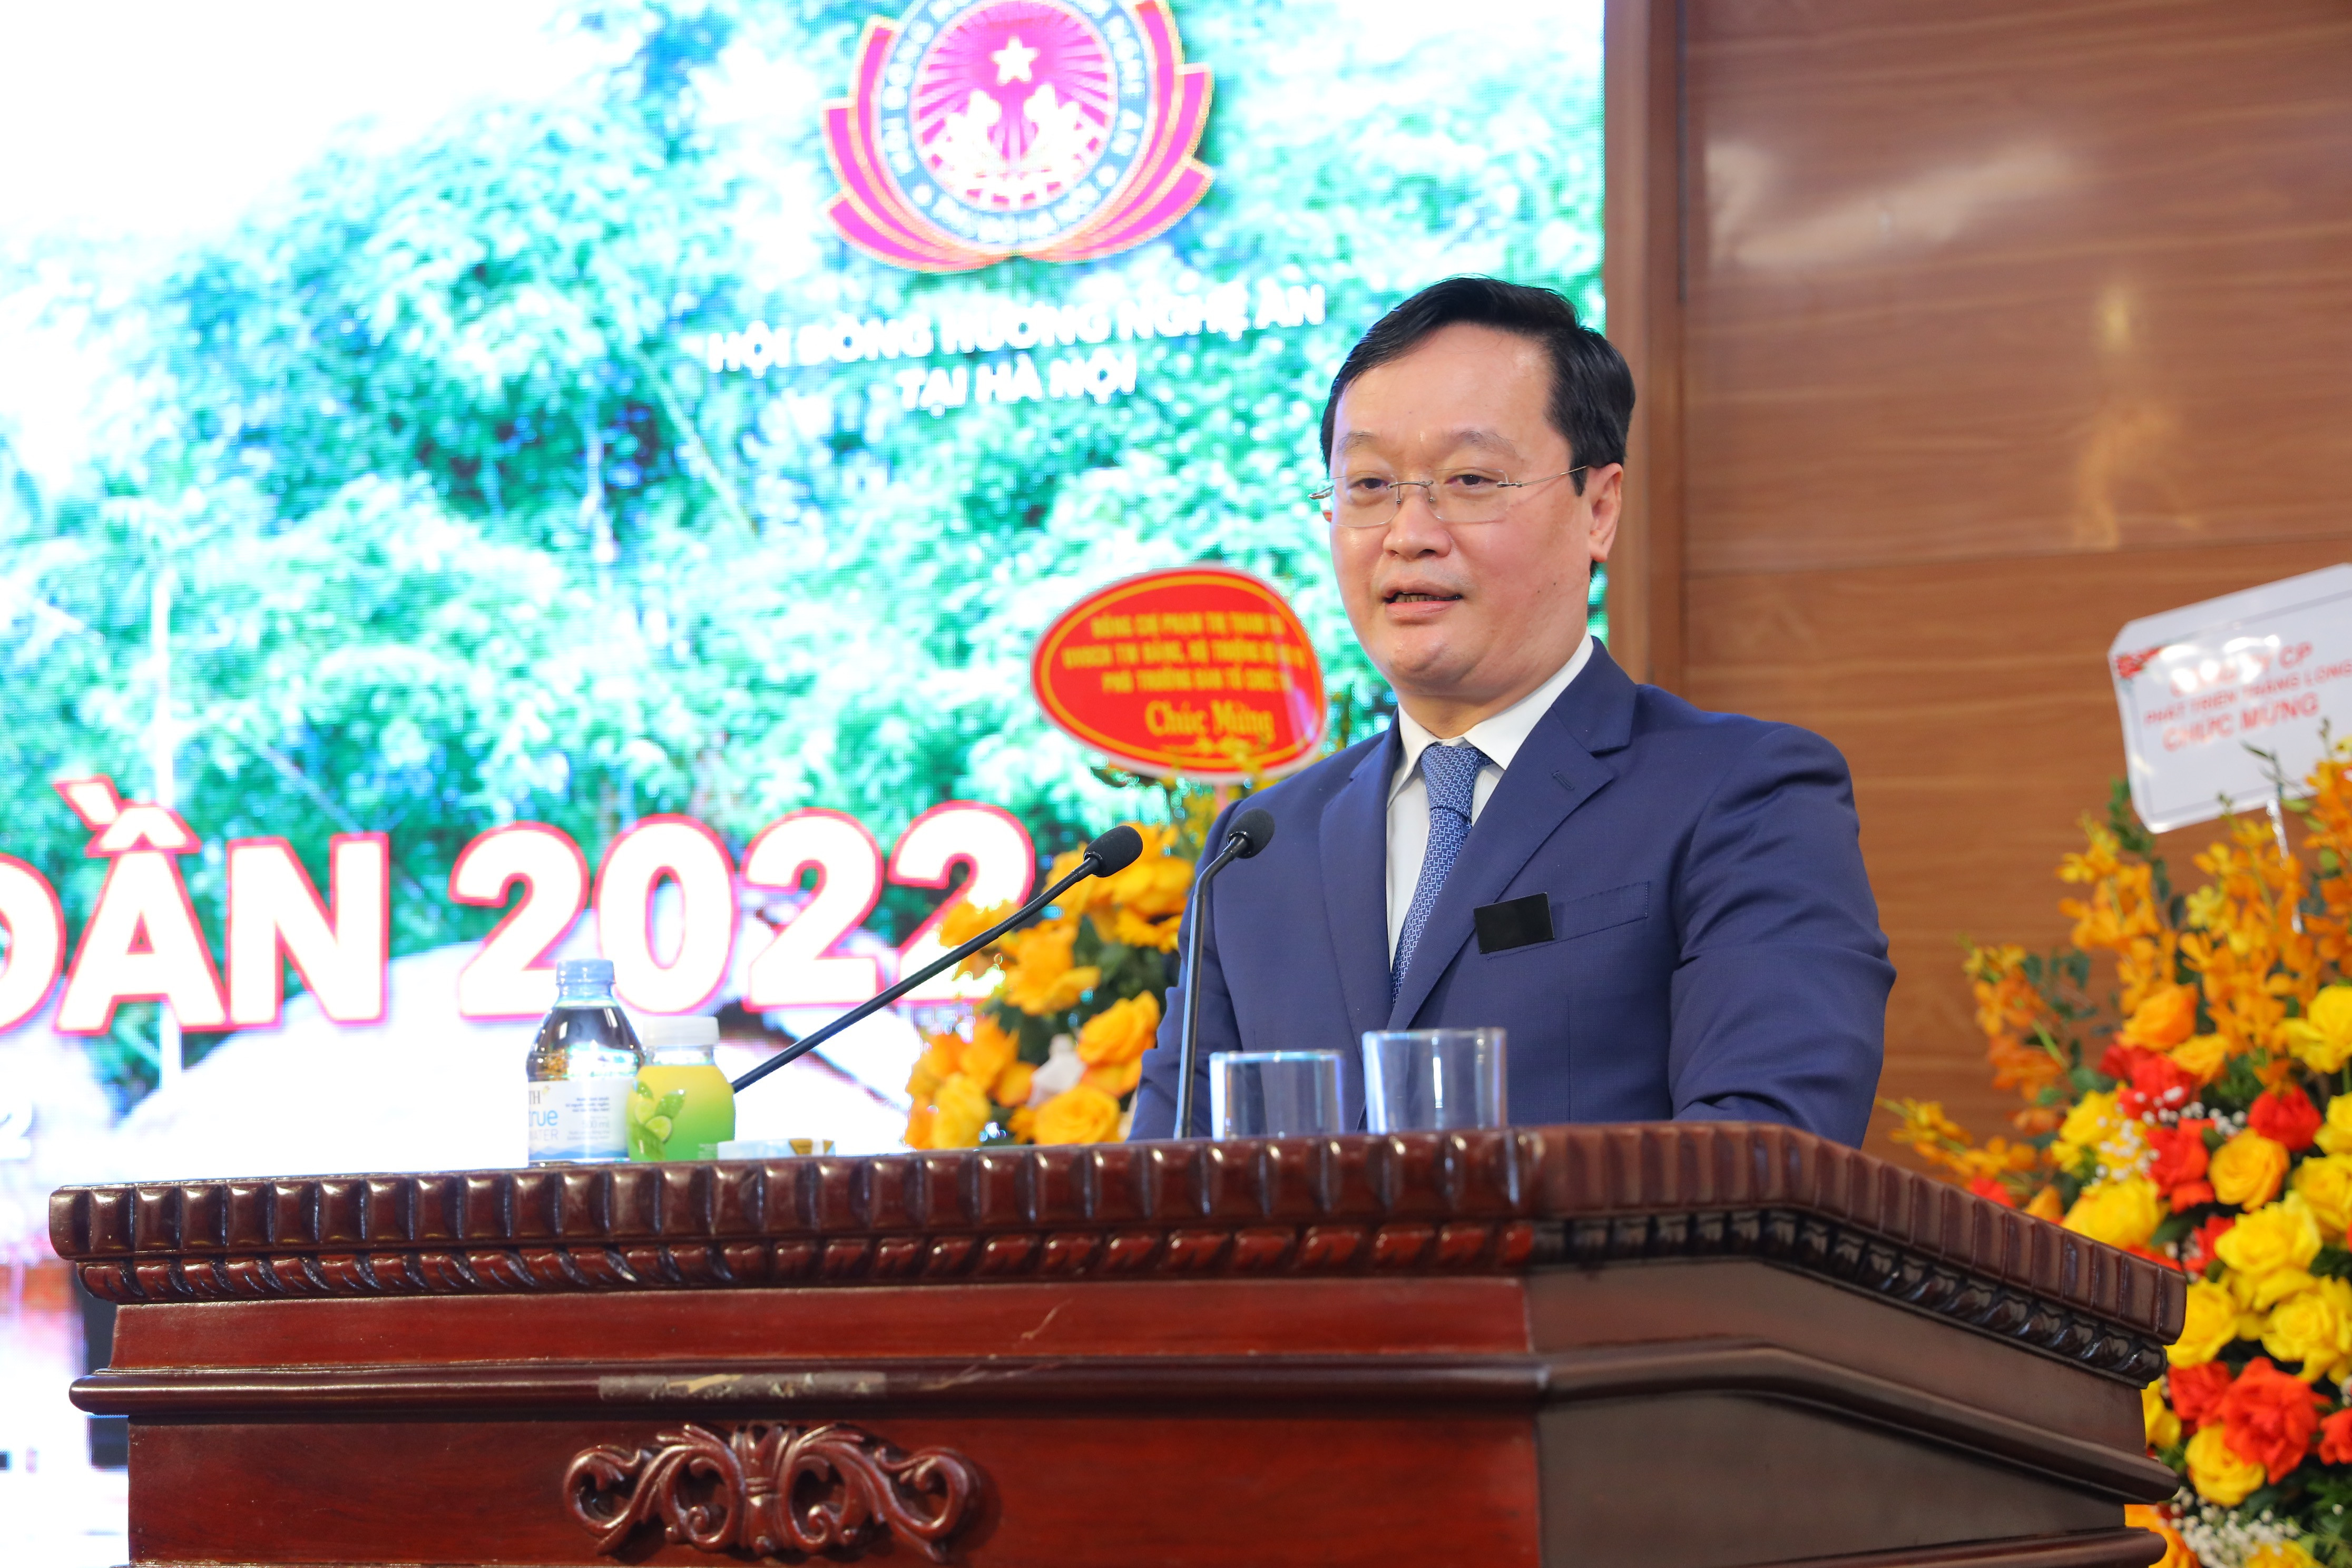 Đồng chí Nguyễn Đức Trung - Phó Bí thư Tỉnh ủy, Chủ tịch UBND tỉnh báo cáo đến Hội đồng hương Nghệ An tại Hà Nội về những kết quả kinh tế - xã hội nổi bật của tỉnh năm 2021 và định hướng phát triển năm 2022. Ảnh Nguyên Nguyên 